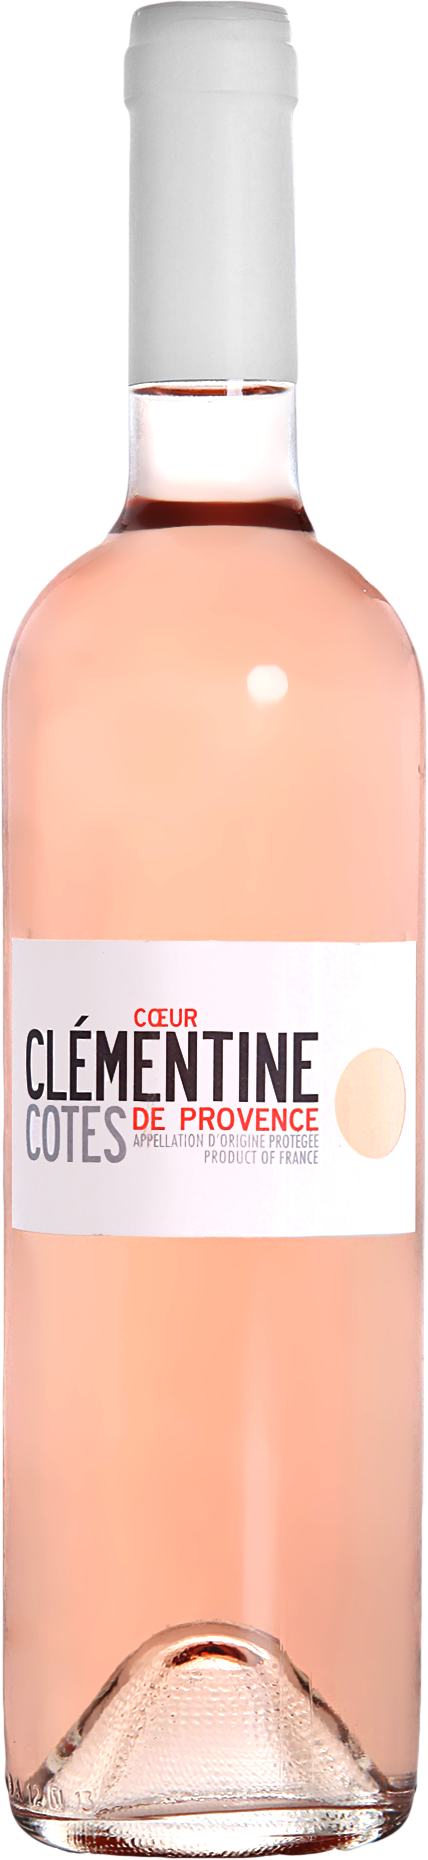 Coeur Clémentine Côtes de Provence Rosé 2020